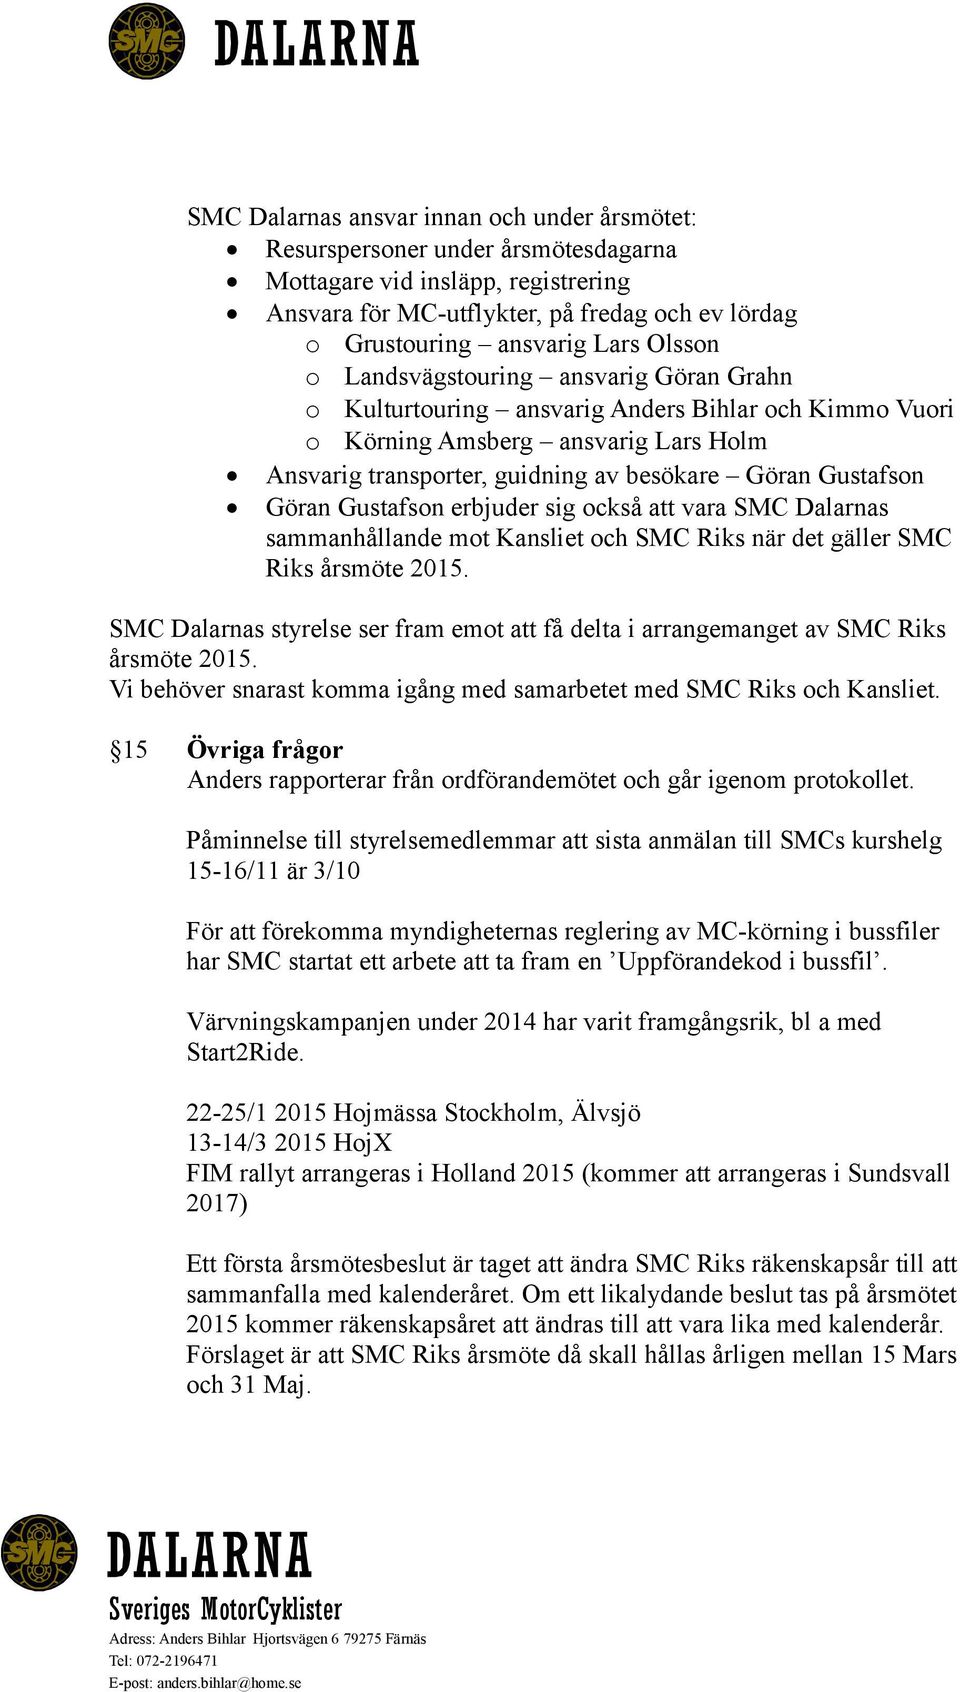 Göran Gustafson erbjuder sig också att vara SMC Dalarnas sammanhållande mot Kansliet och SMC Riks när det gäller SMC Riks årsmöte 2015.